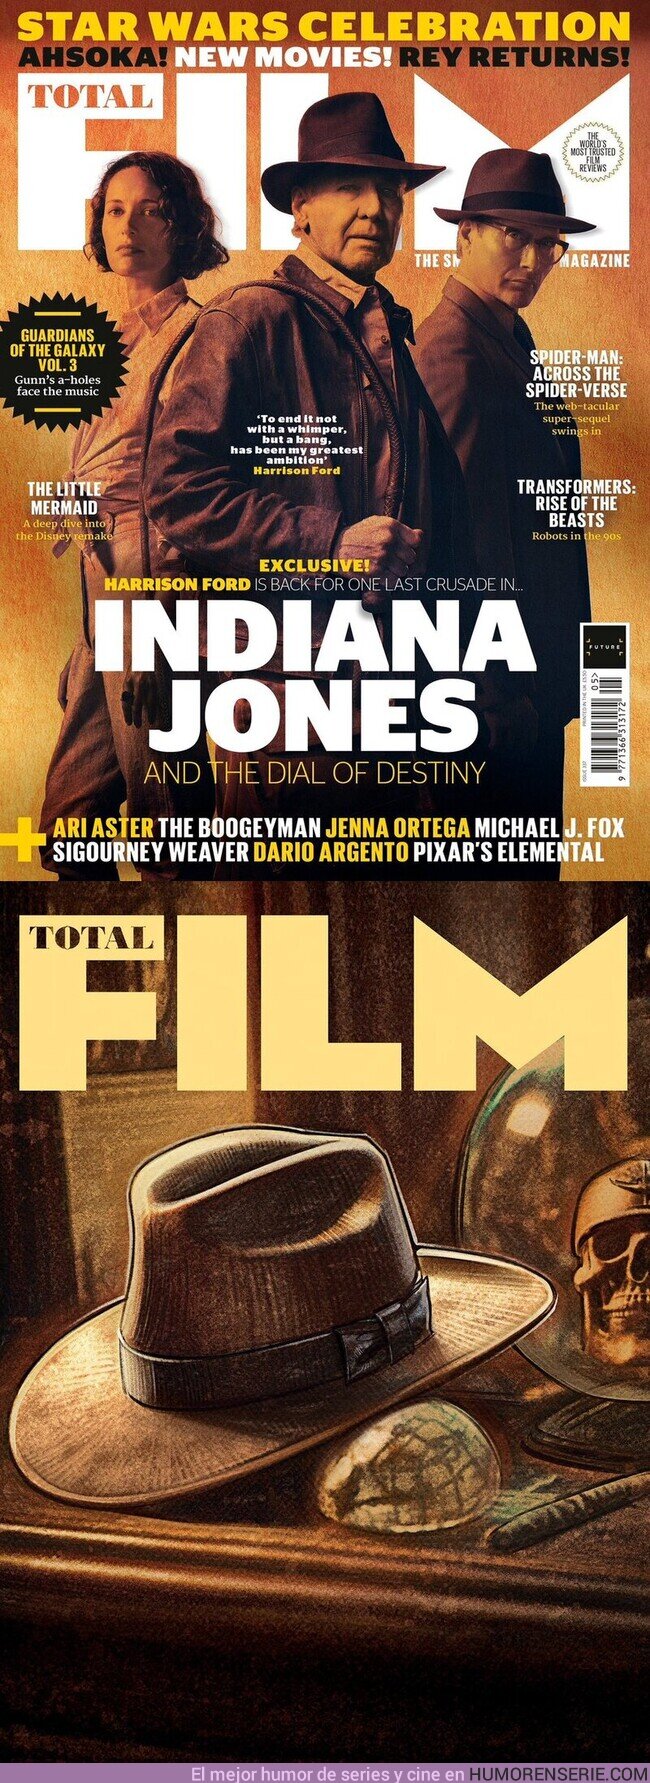 123343 - Nuevos vistazos a Indiana Jones y el Dial del destino en las portadas de la revista @totalfilm ??.La película que tiene como protagonistas a #HarrisonFord, #PhoebeWallerBridge y #MadsMikkelsen se estrenará el 29 de junio, por @PlanoCinefilo